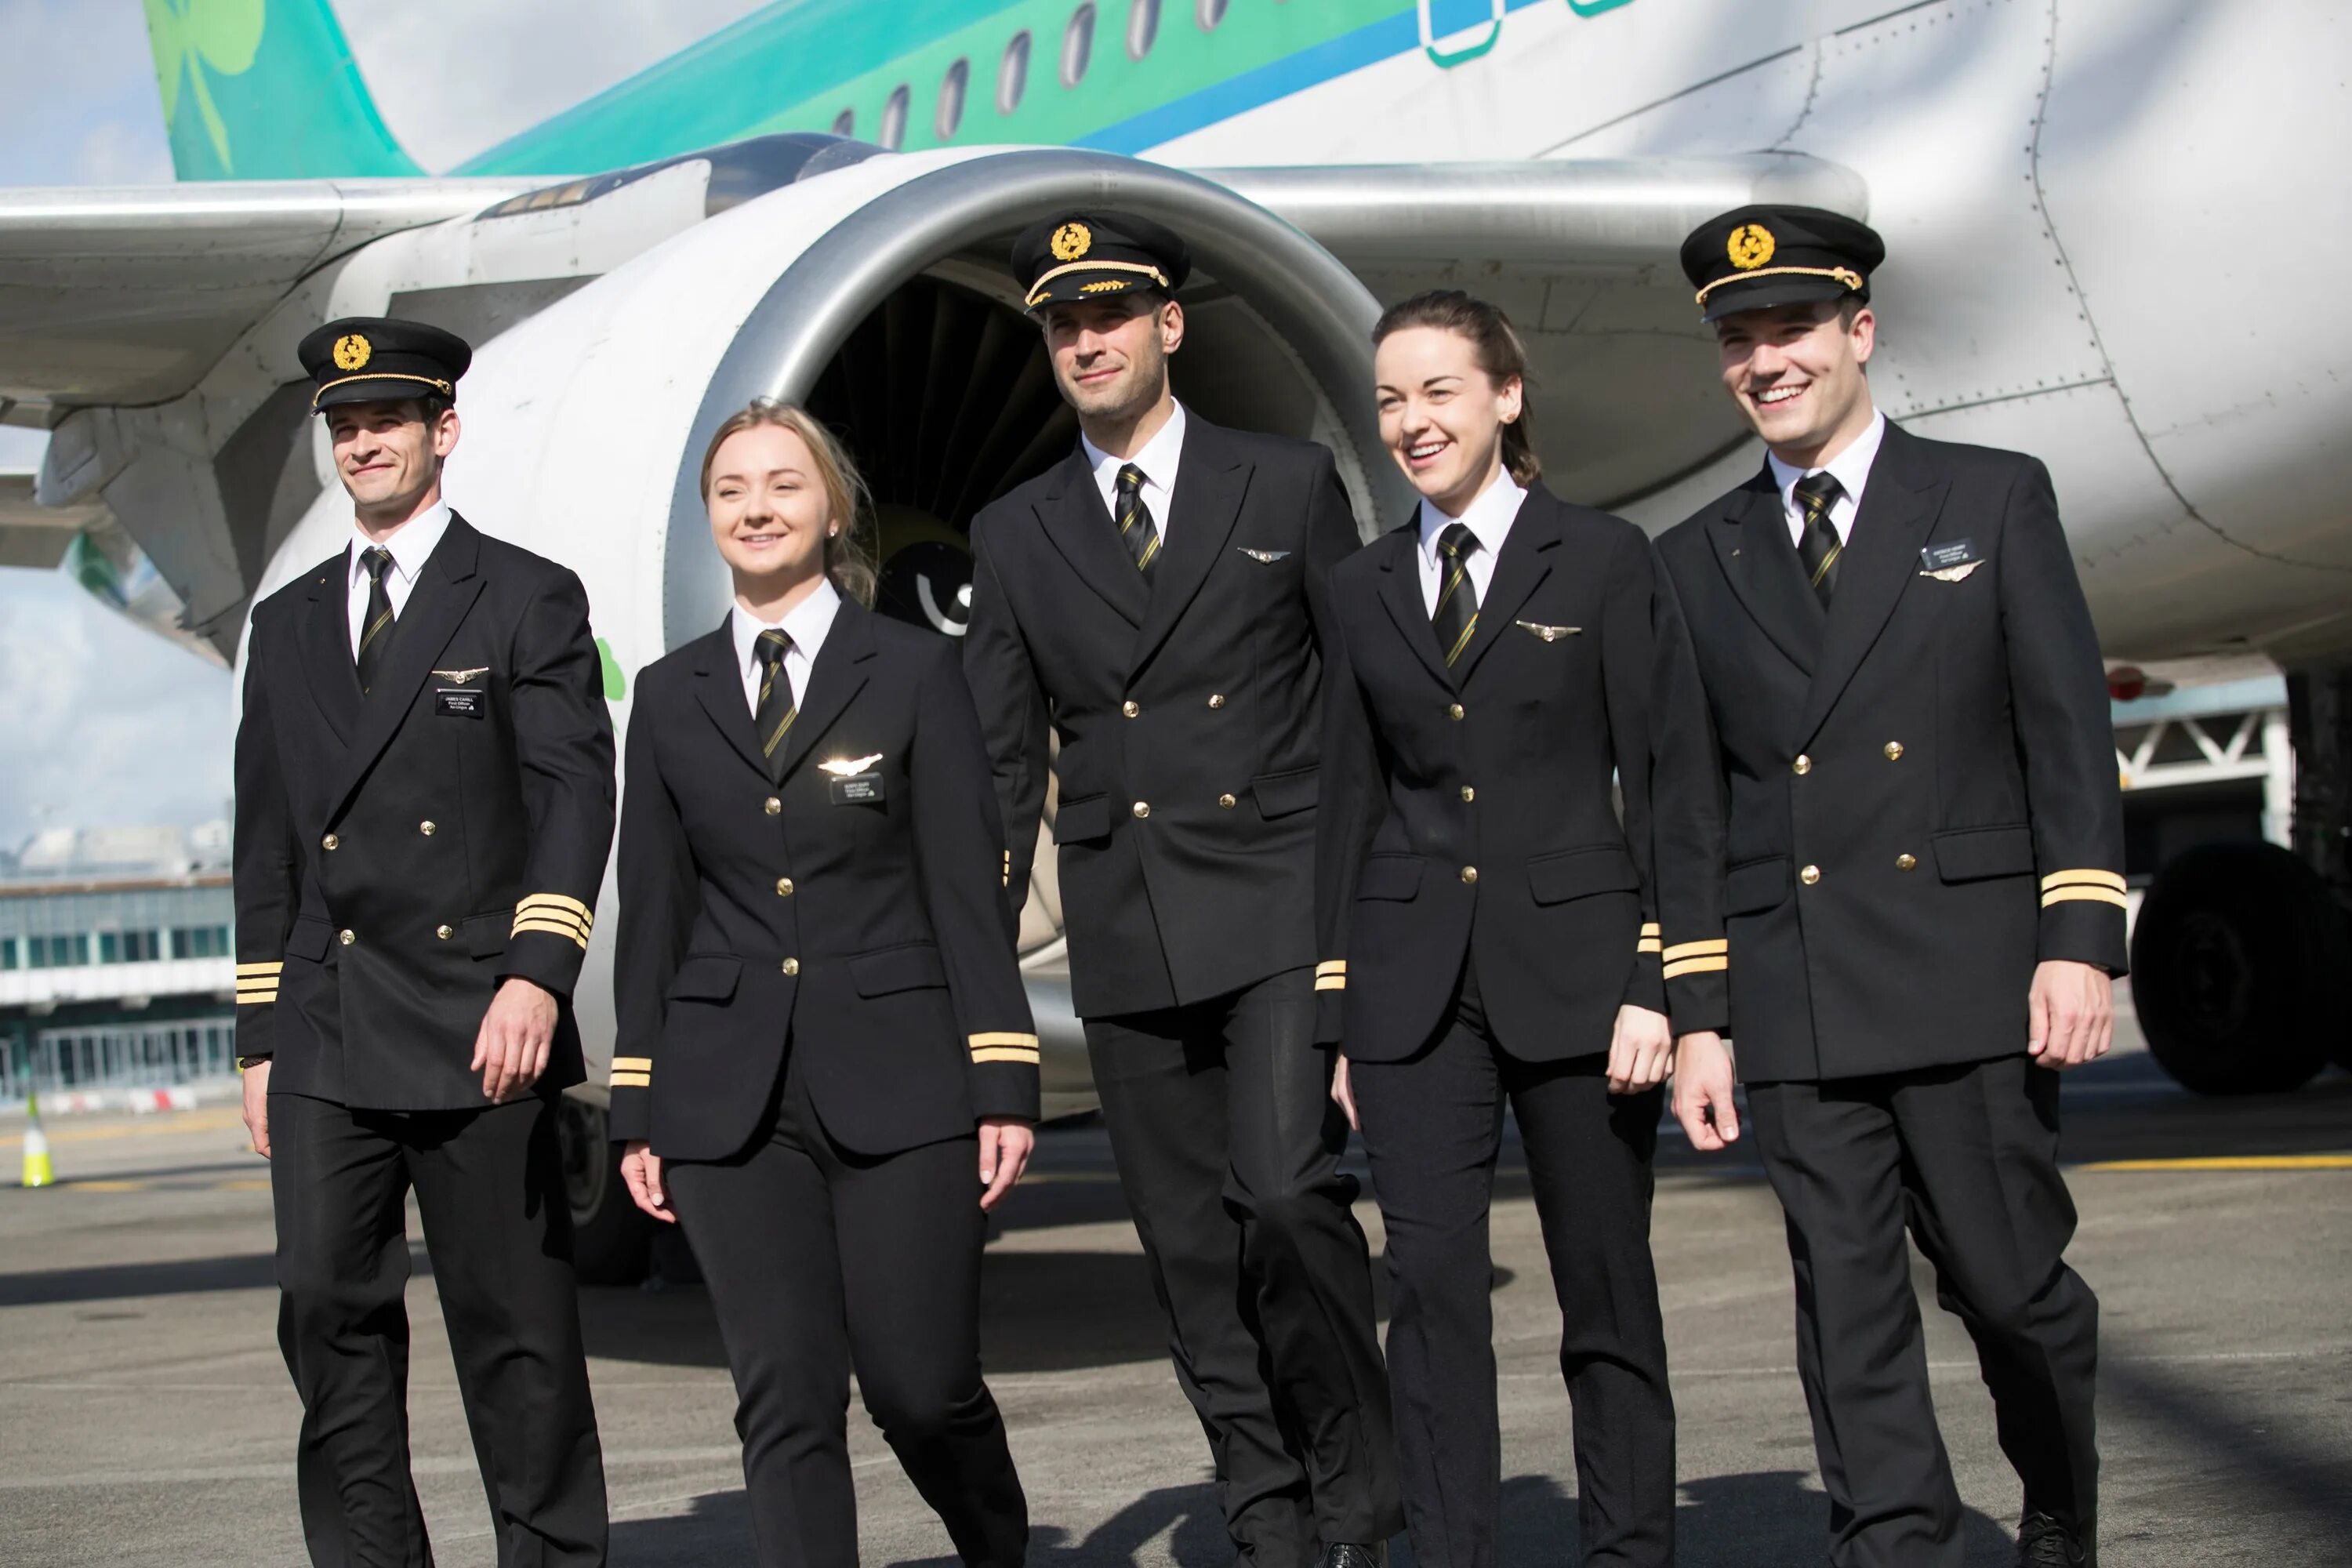 Гражданской авиации отзывы. Aer Lingus униформа 2022. Aer Lingus новая униформа. Aer Lingus униформа 2020. Новая униформа стюардесс авиакомпании aer Lingus.